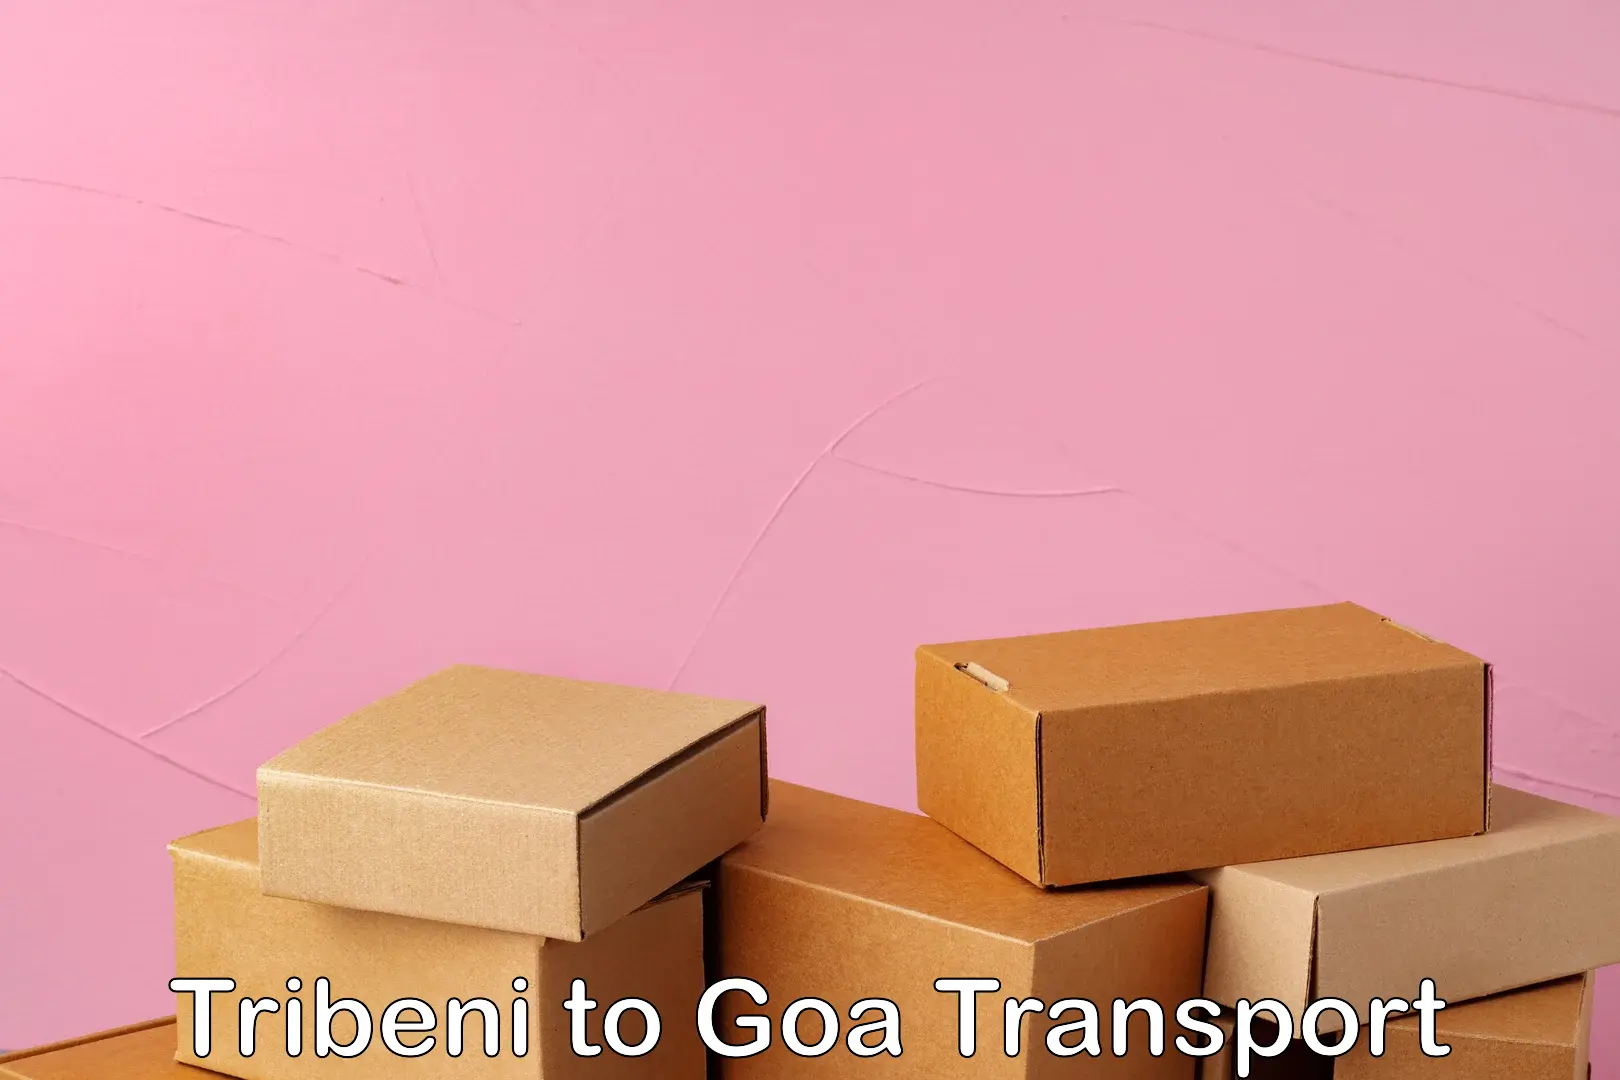 Cargo train transport services Tribeni to Goa University